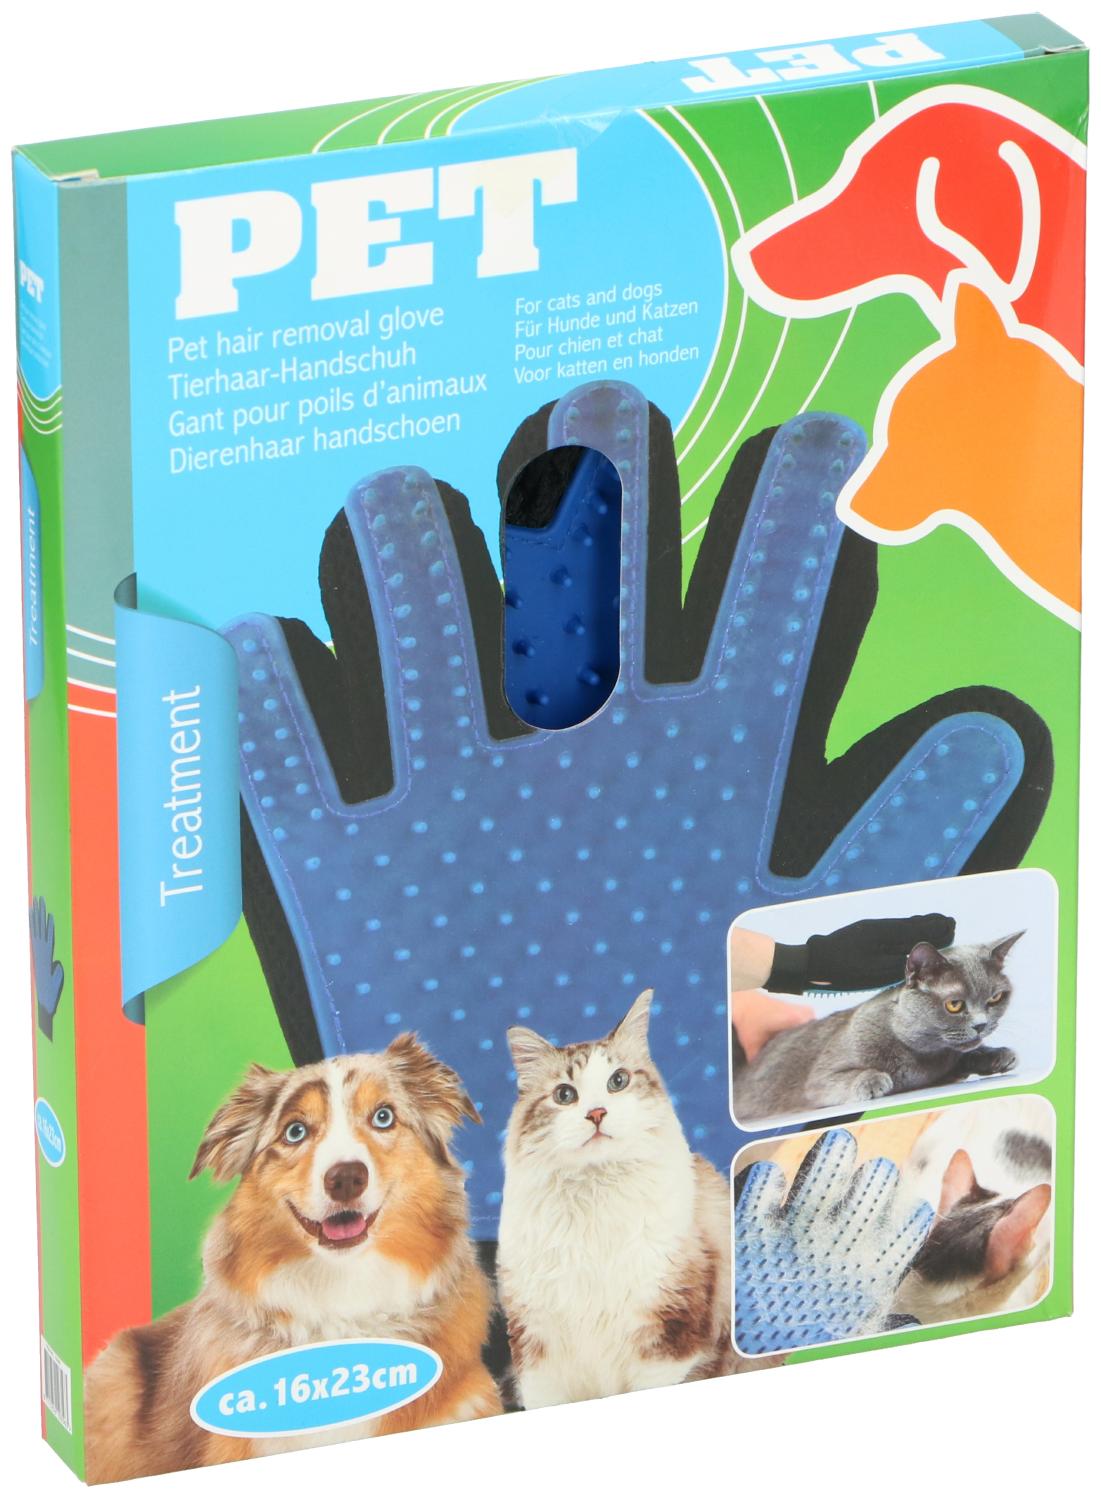 Handschoenen voor dierenverzorging - Pet Treatment - Bivakshop